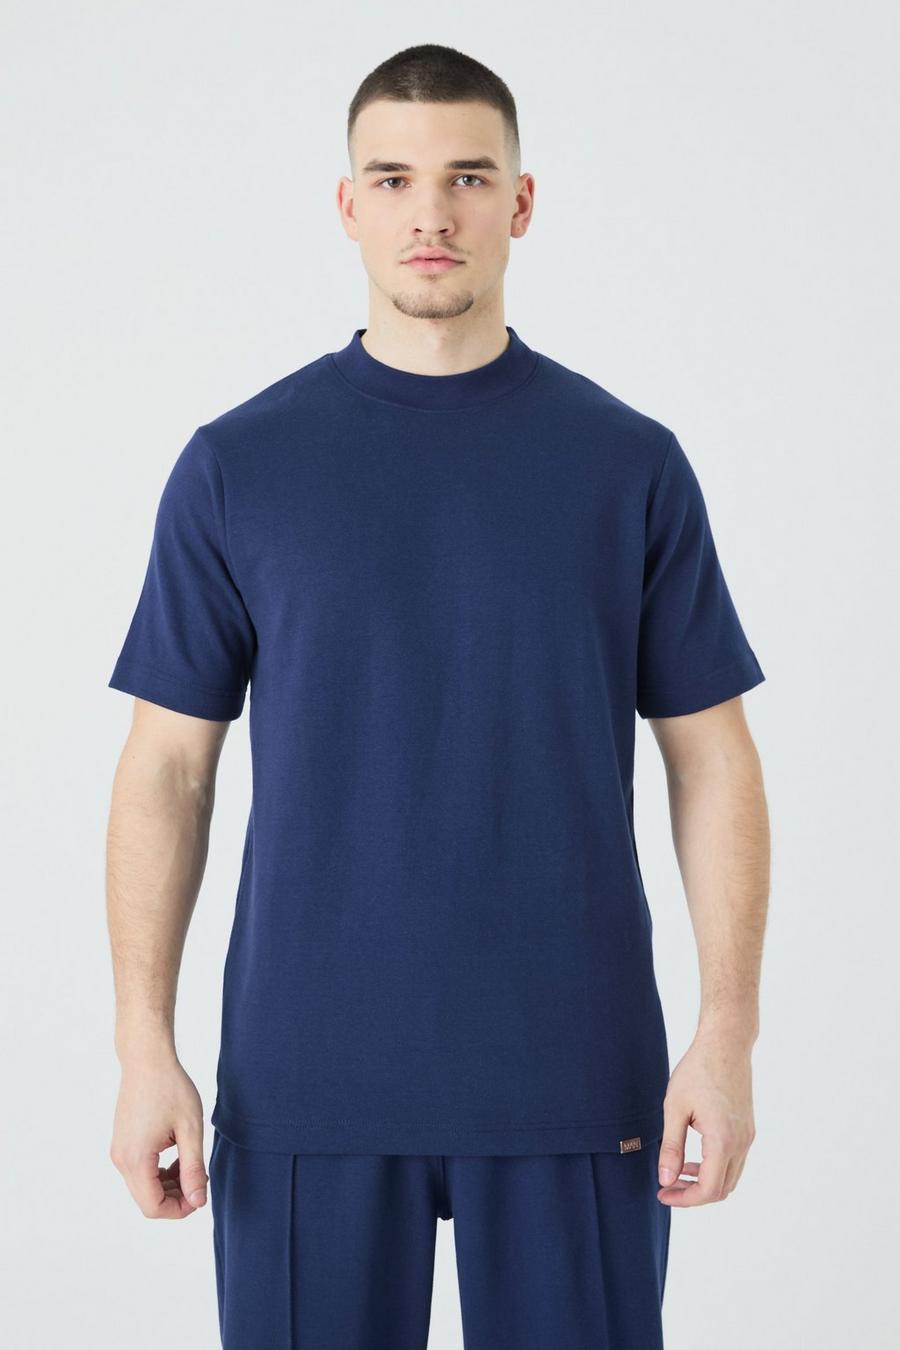 T-shirt Tall Slim Fit in maglia intrecciata pesante con girocollo esteso, Navy